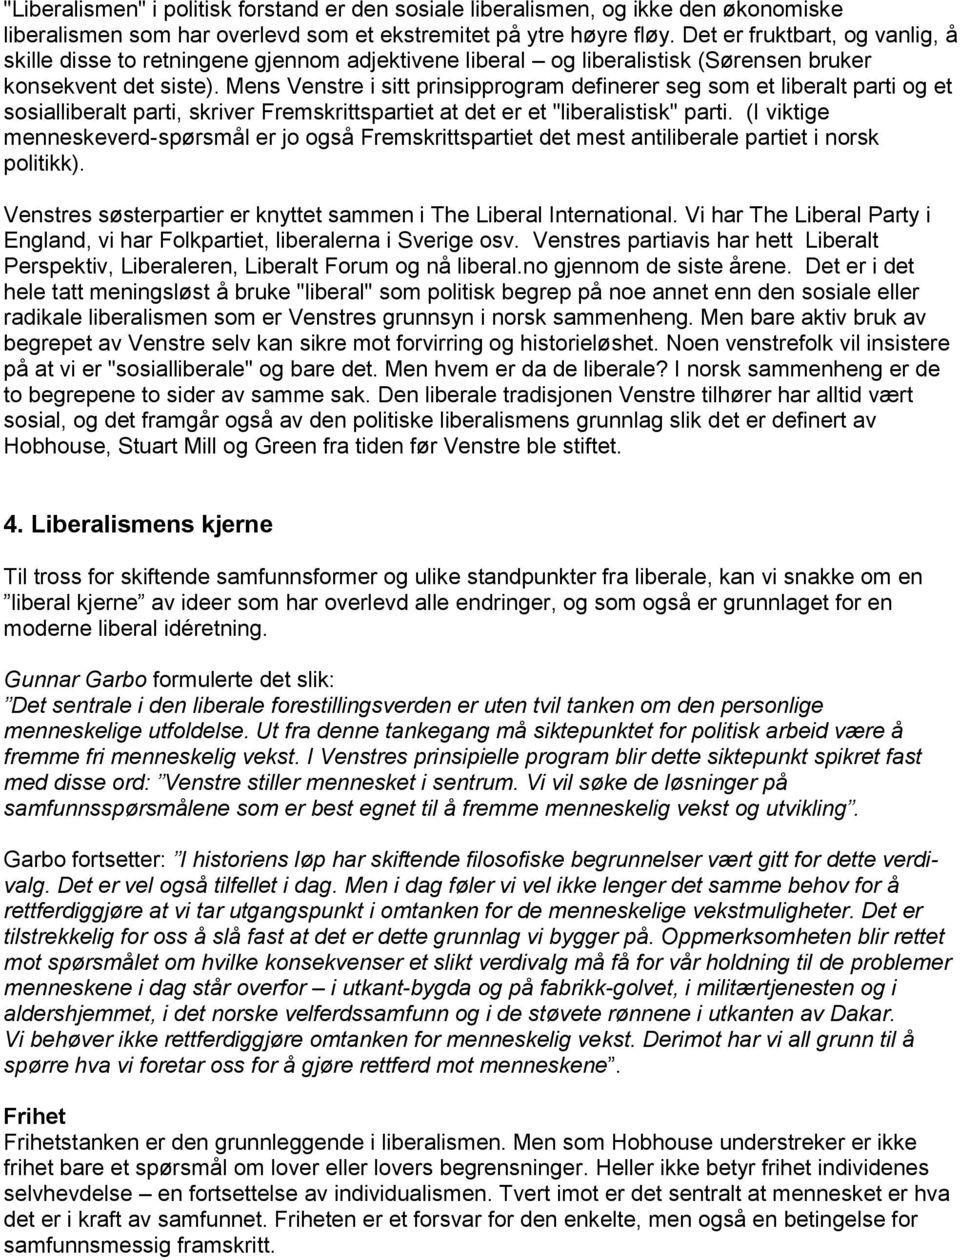 Mens Venstre i sitt prinsipprogram definerer seg som et liberalt parti og et sosialliberalt parti, skriver Fremskrittspartiet at det er et "liberalistisk" parti.